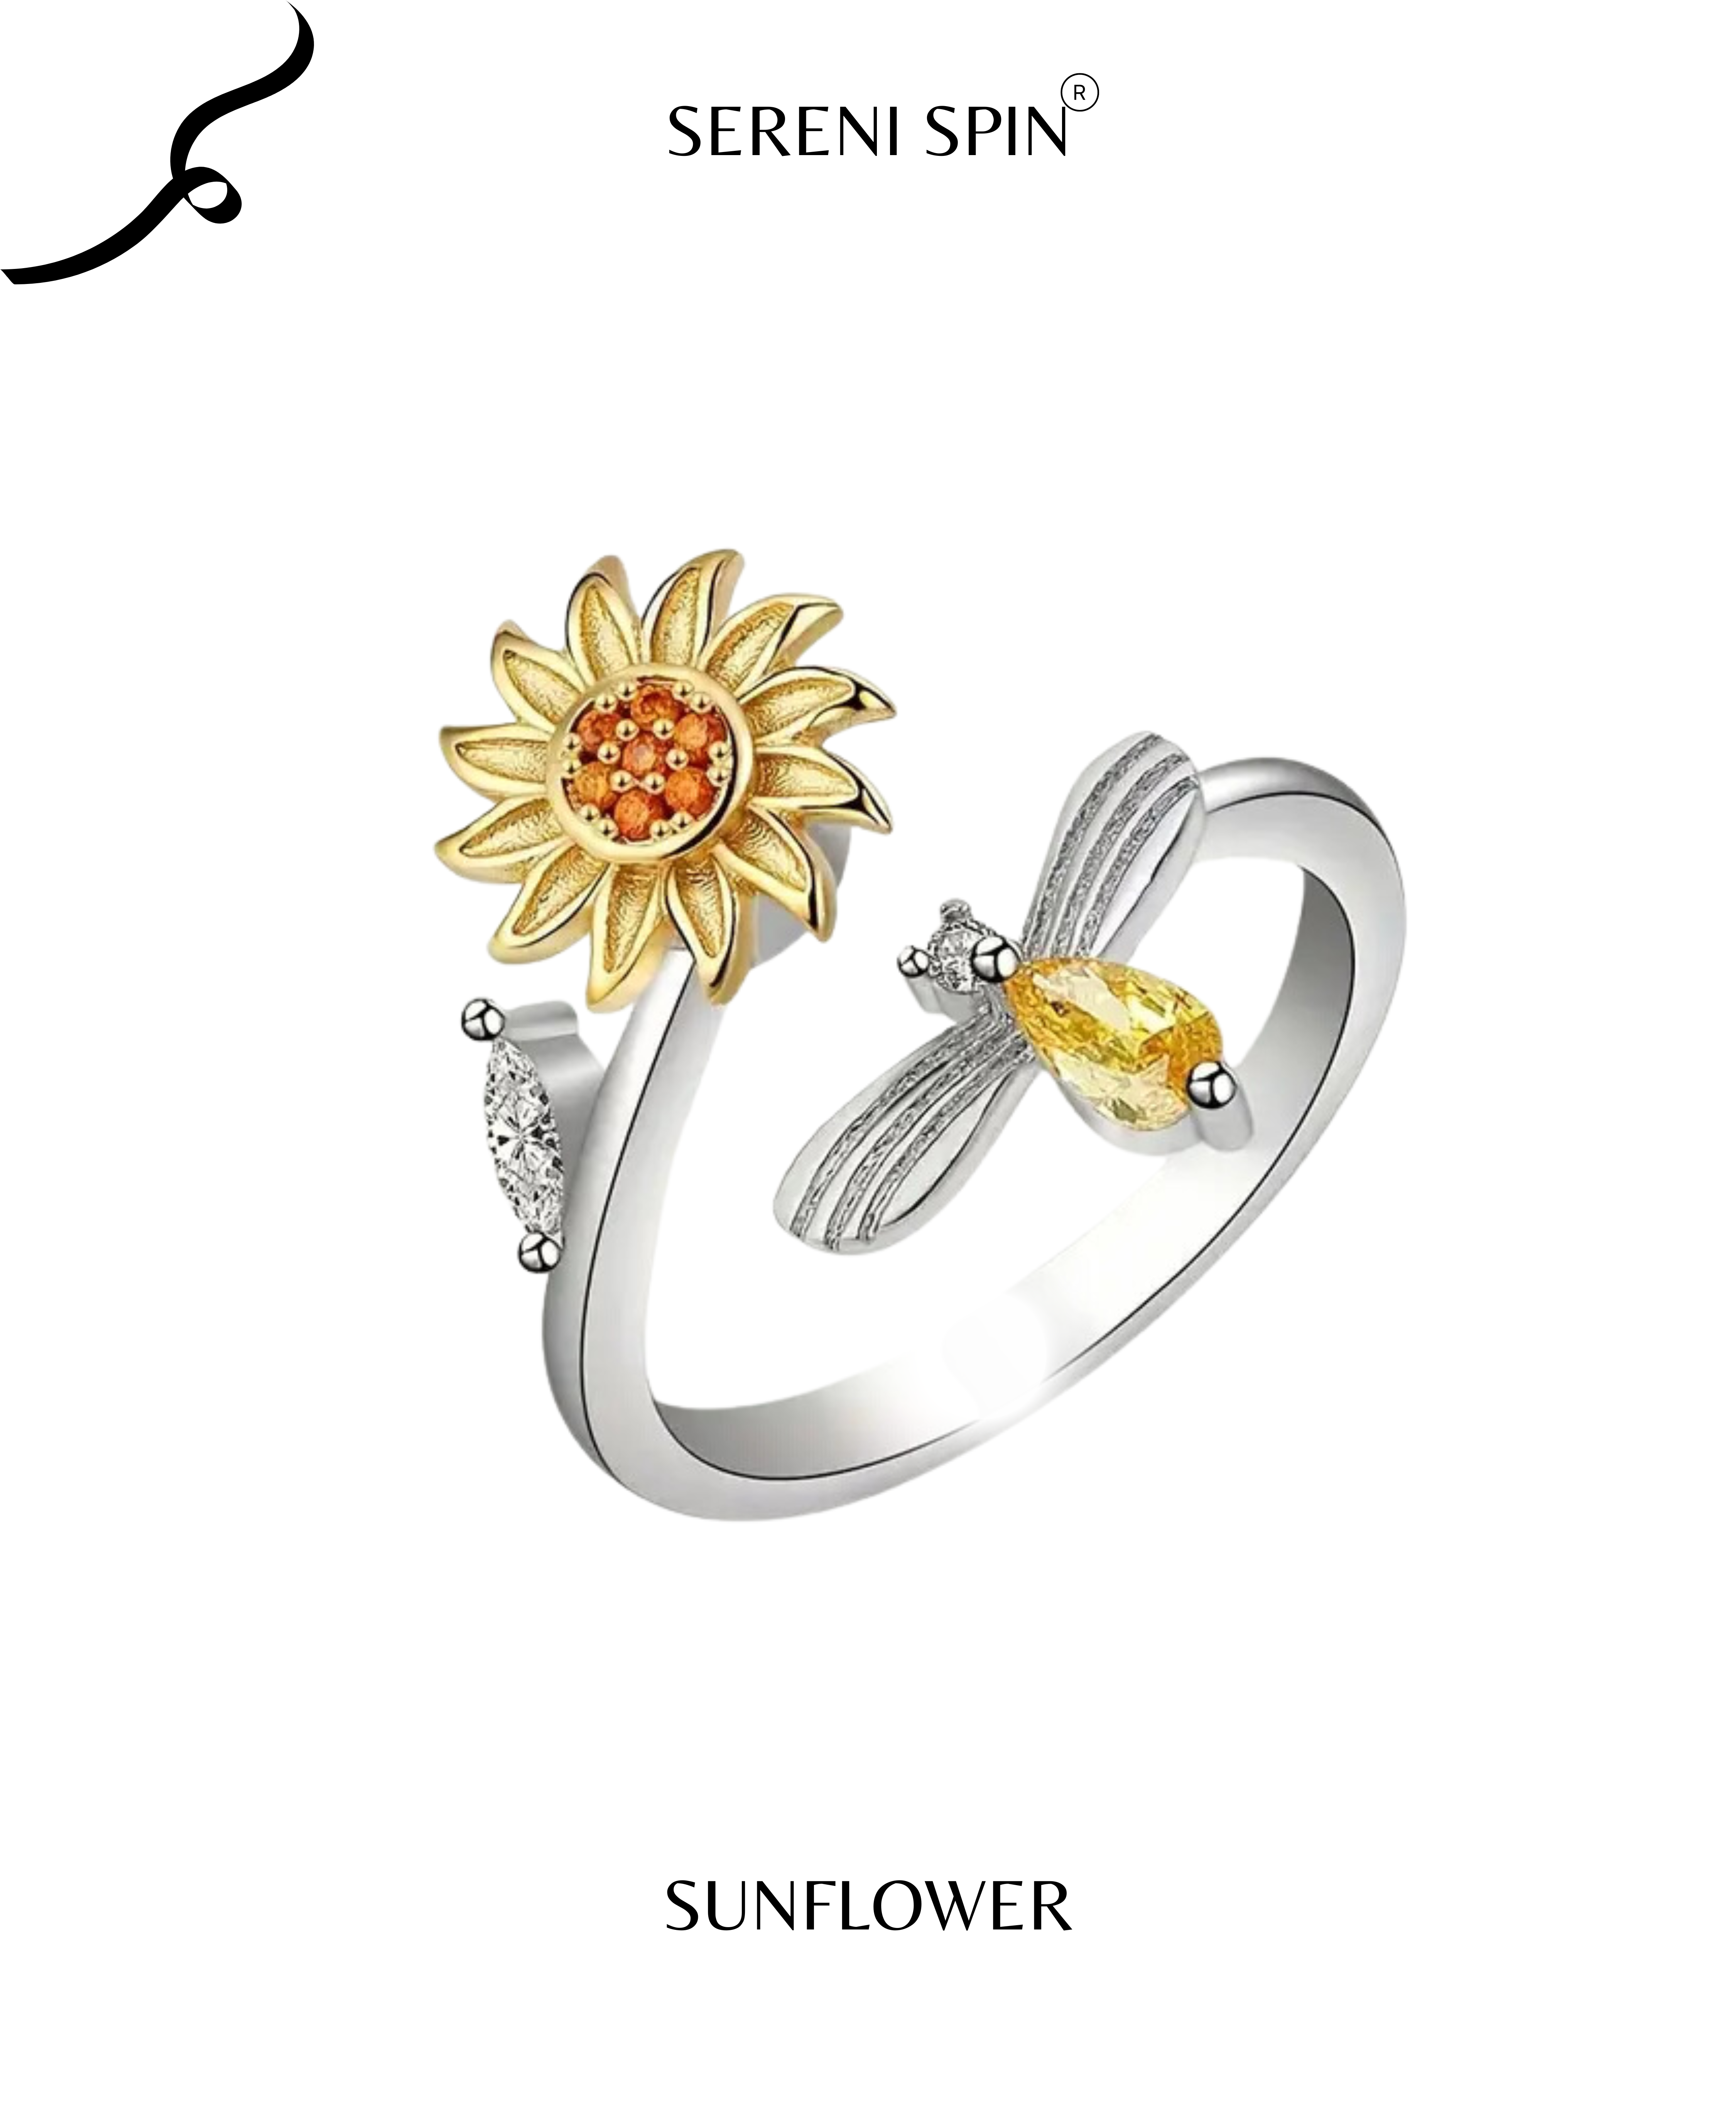 Sunbeam Splendor: The 'Sunflower' Ring 🌻